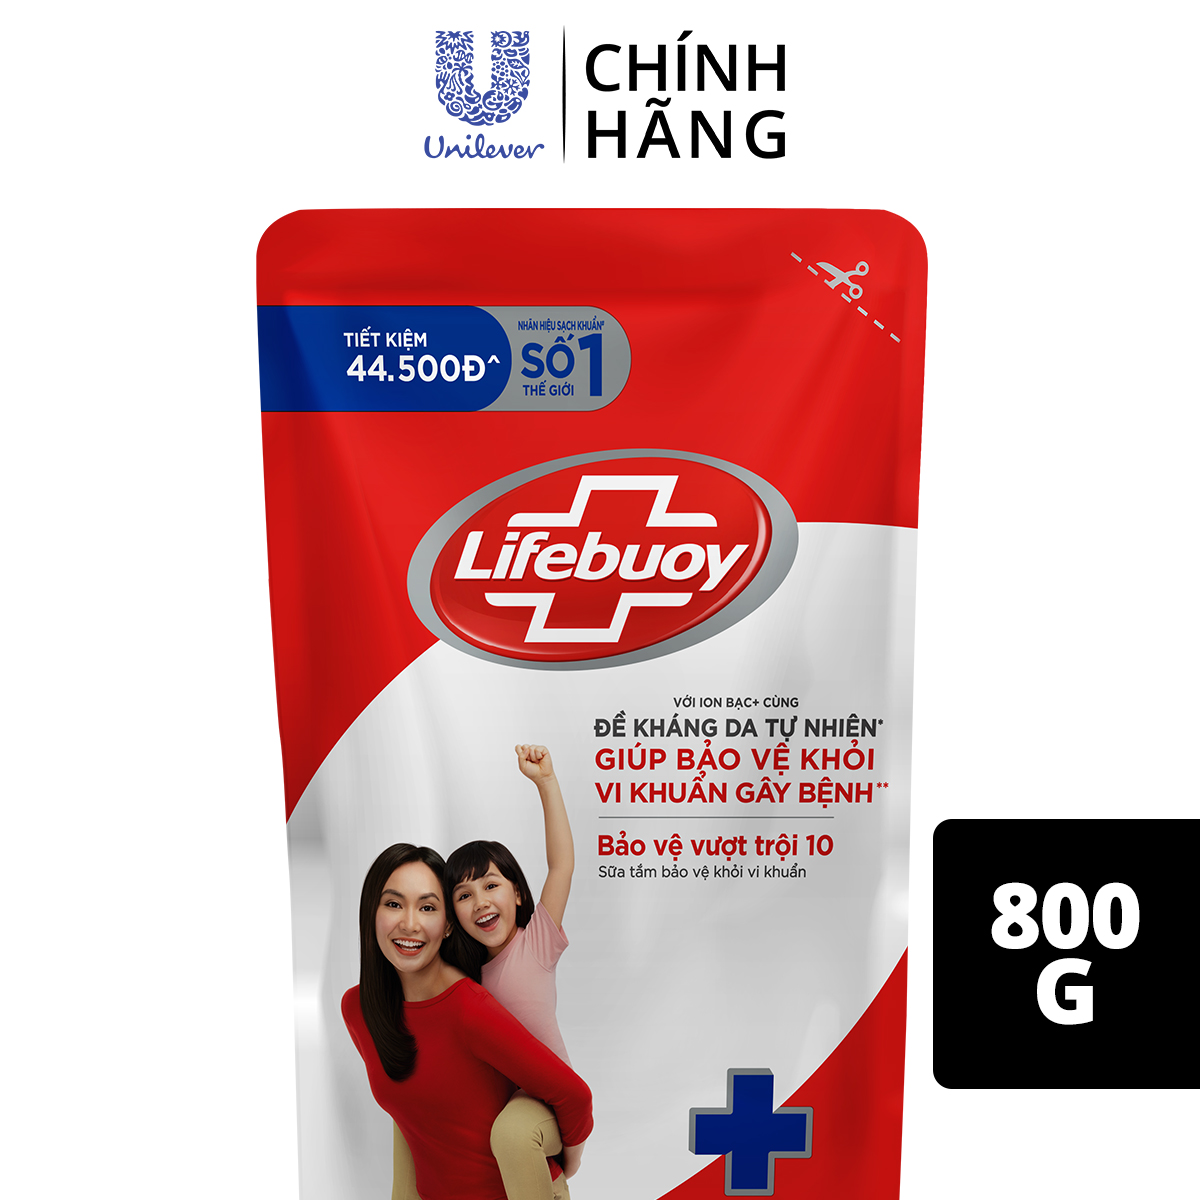 Sữa tắm Lifebuoy 800g Bảo Vệ Vượt Trội giúp bảo vệ khỏi 99.9% vi khuẩn và ngăn ngừa vi khuẩn lây lan trên da (Túi)